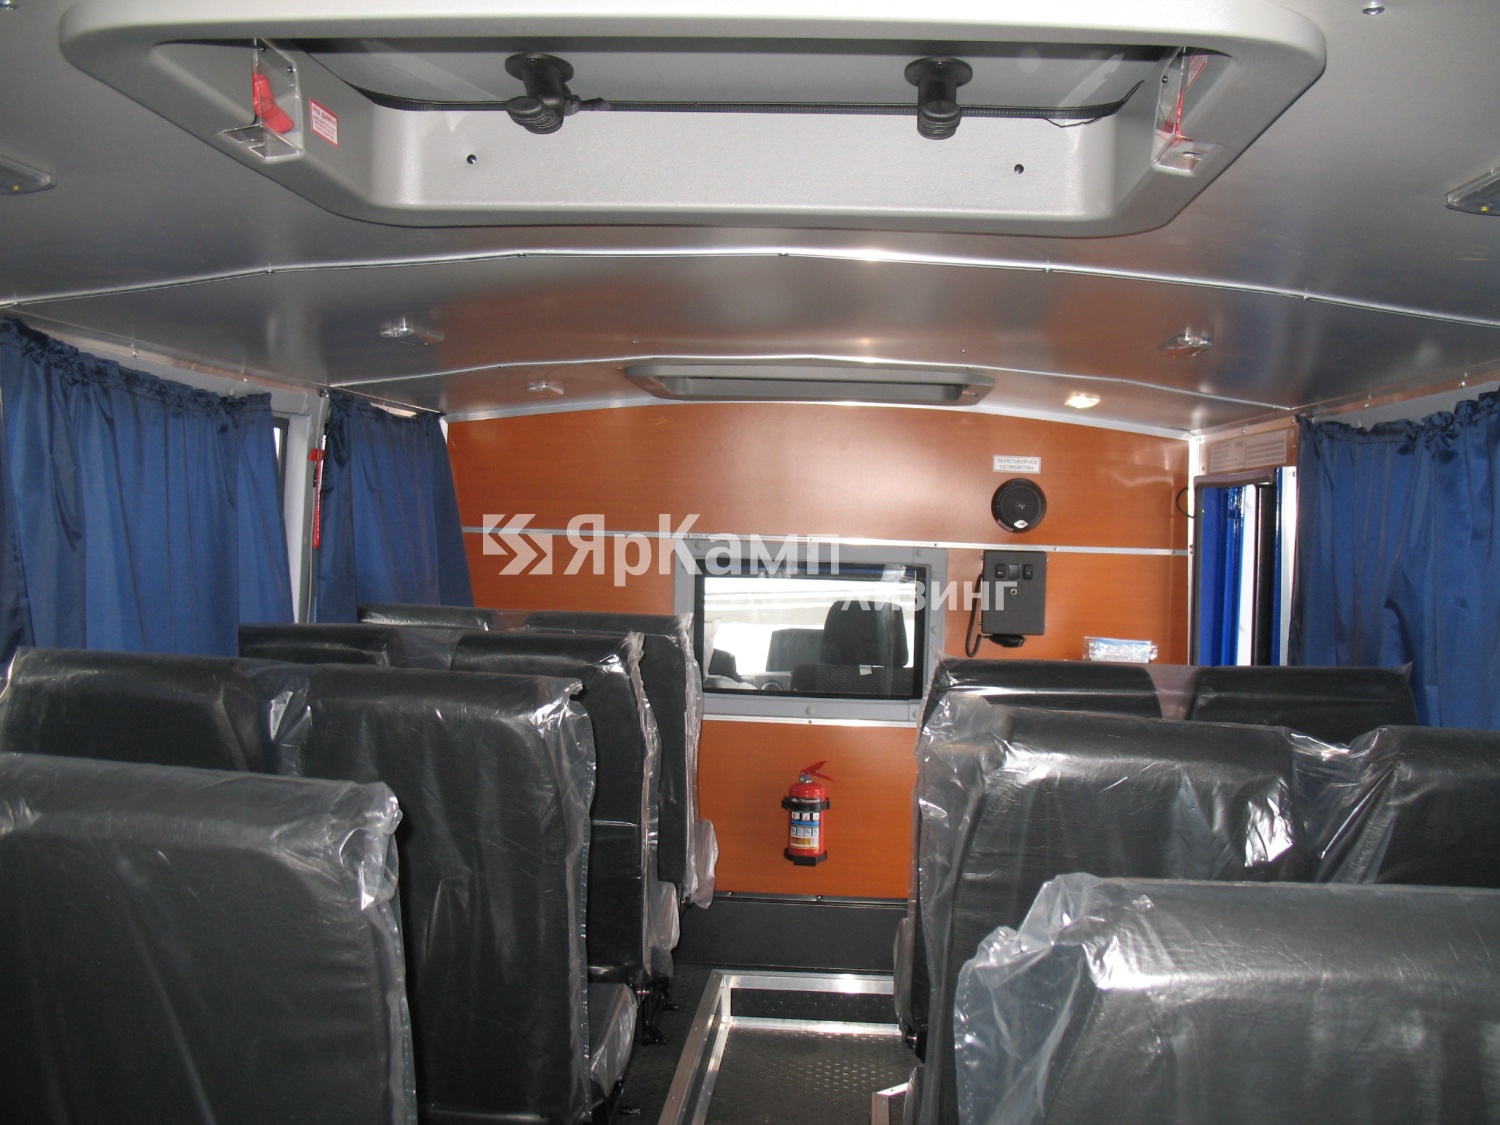 Осуществлена передача вахтового автобуса УРАЛ 32551-5013-71 на условиях финансовой аренды